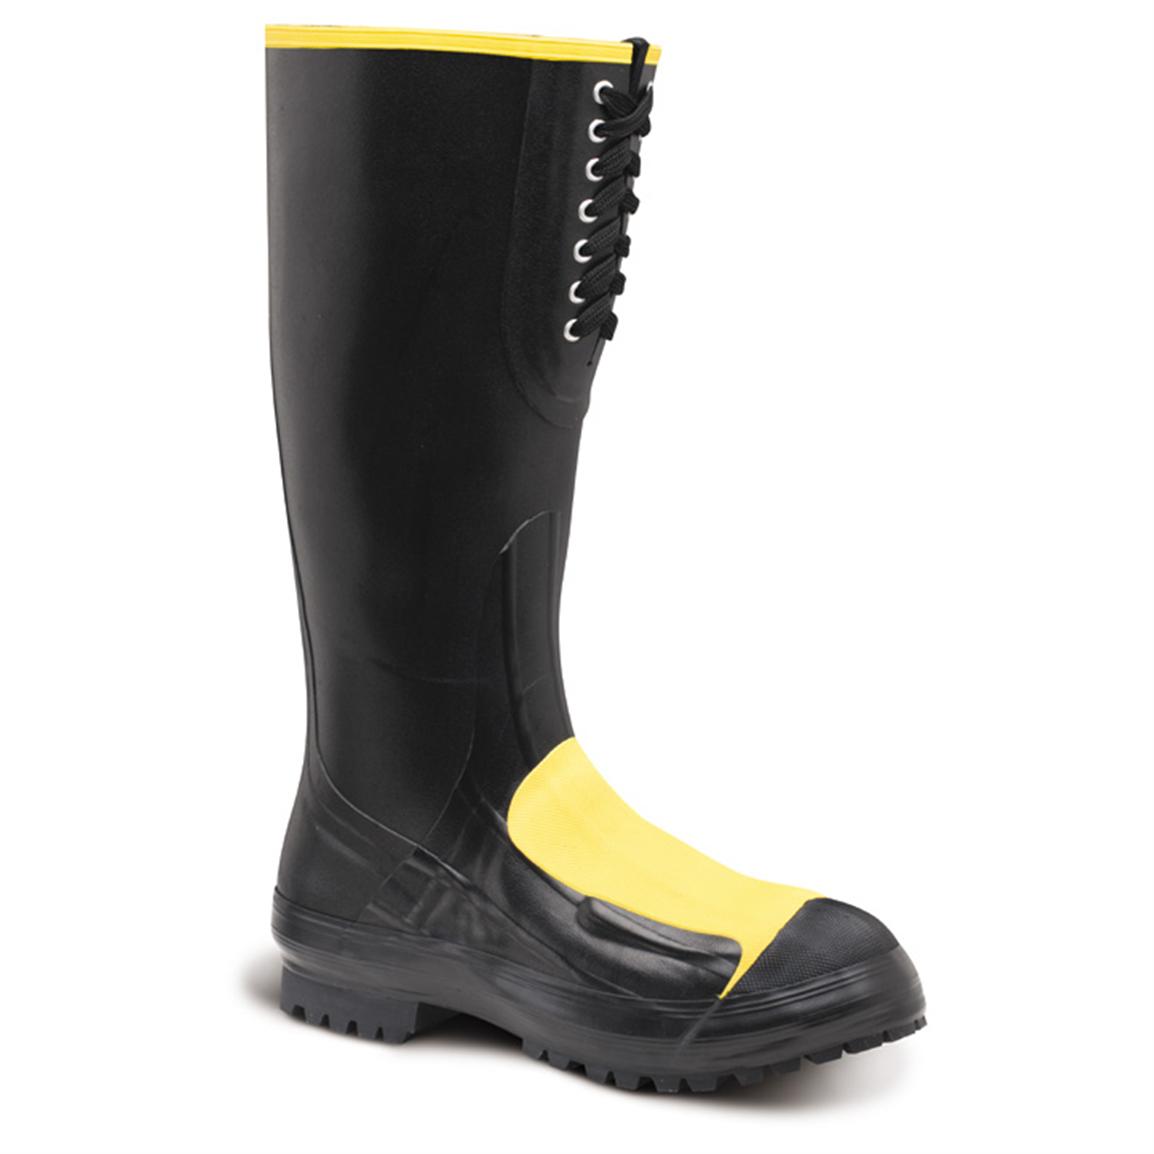 Men's LaCrosse® 16 inch Meta-Pac Work Boots with Steel Toe / Steel Midsole / Metatarsal Guard, Black